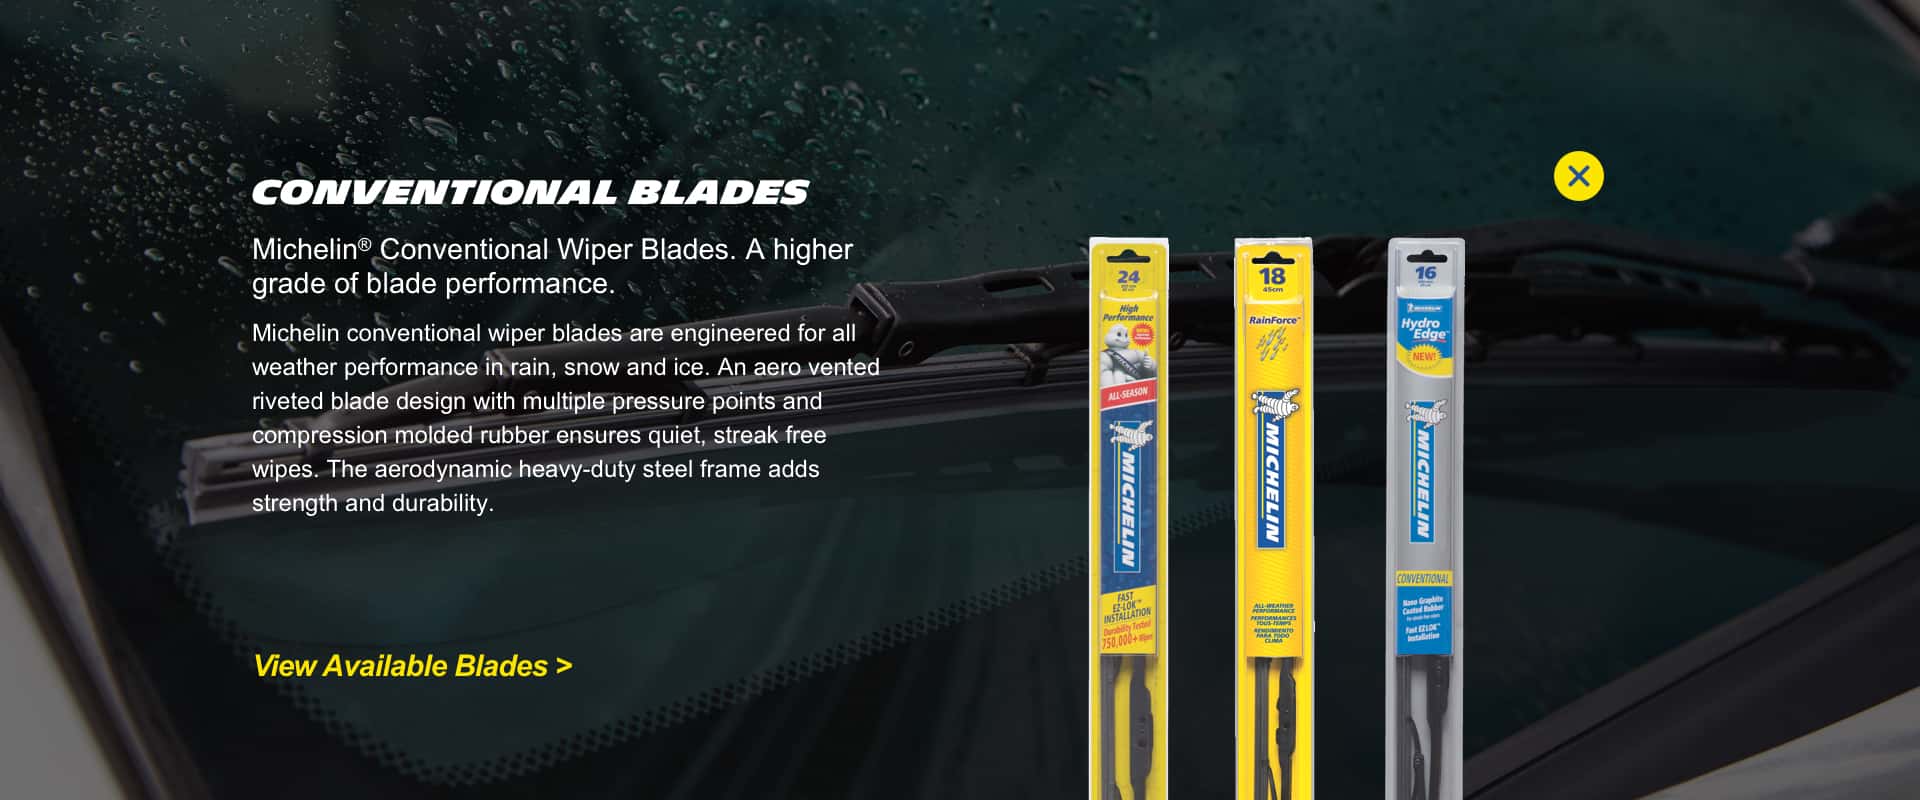 Michelin Wiper Blades | Michelin Lifestyle